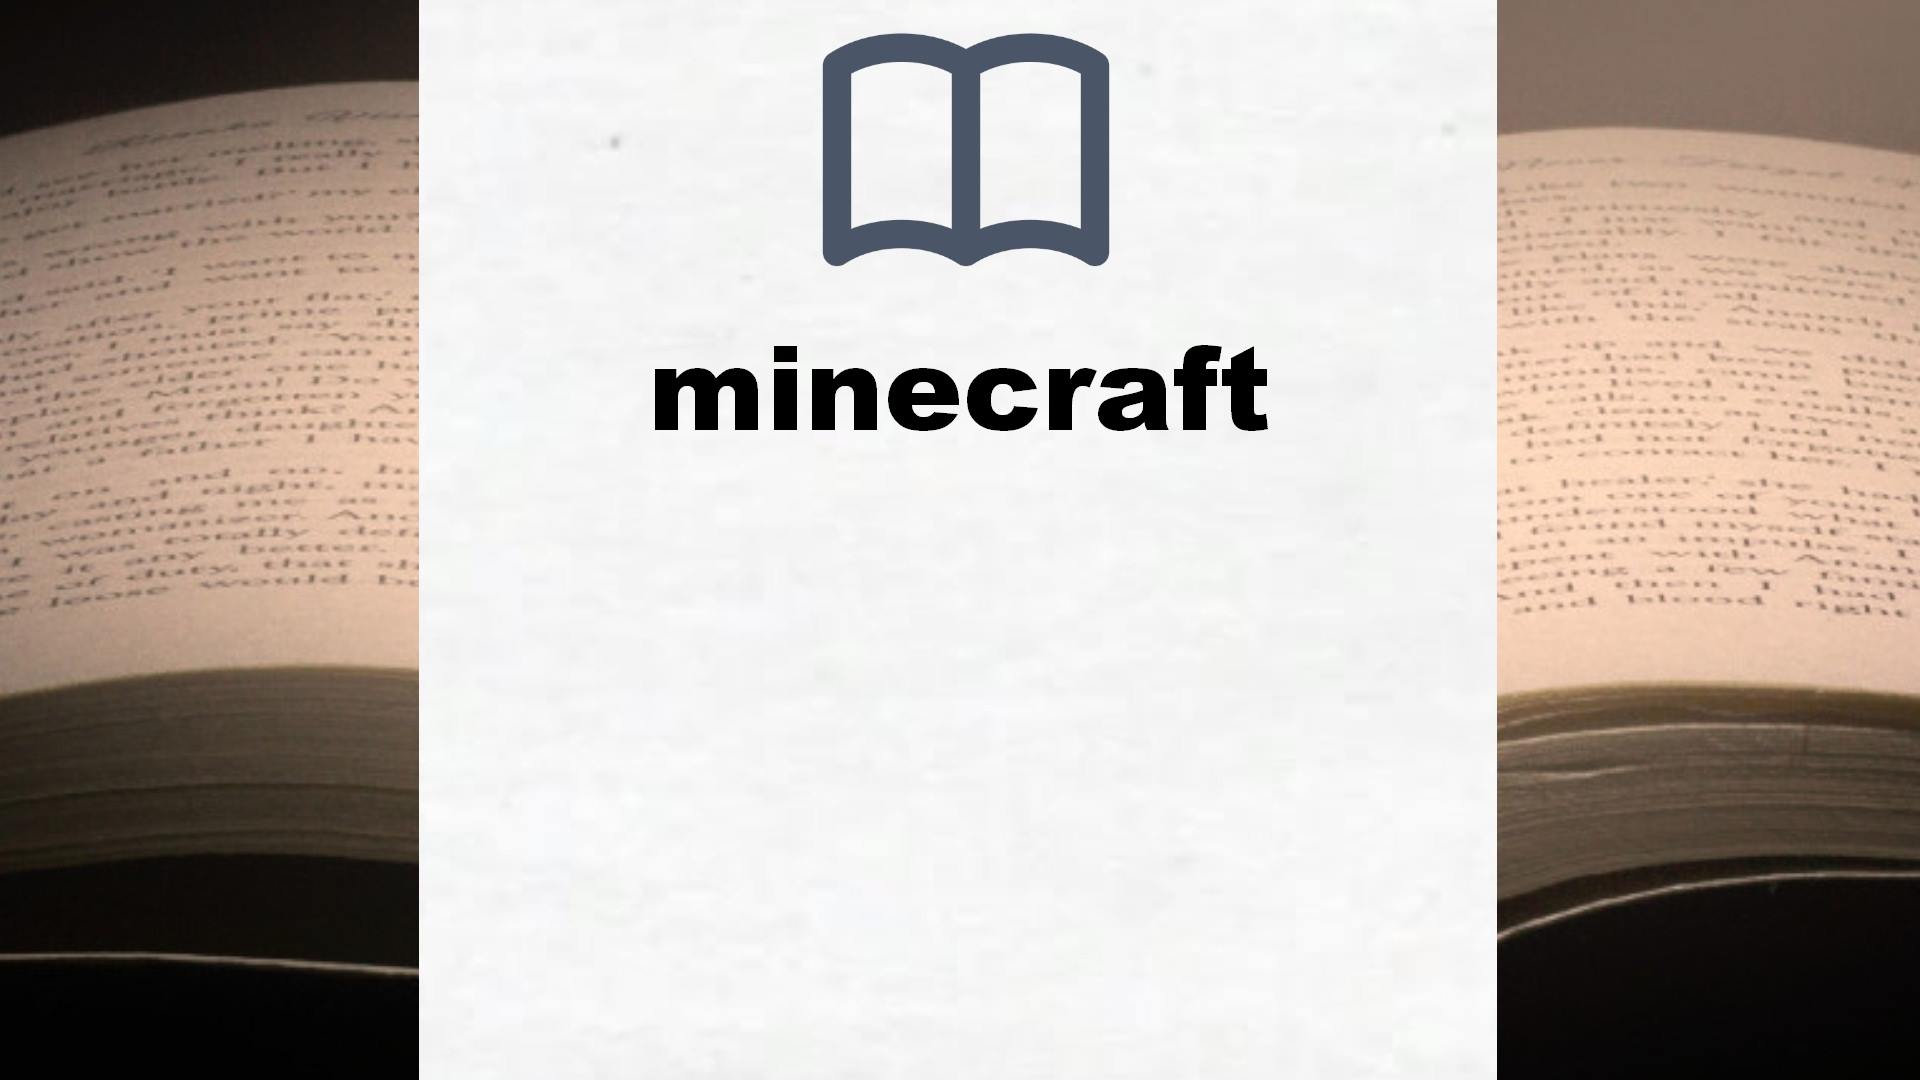 Libros sobre minecraft